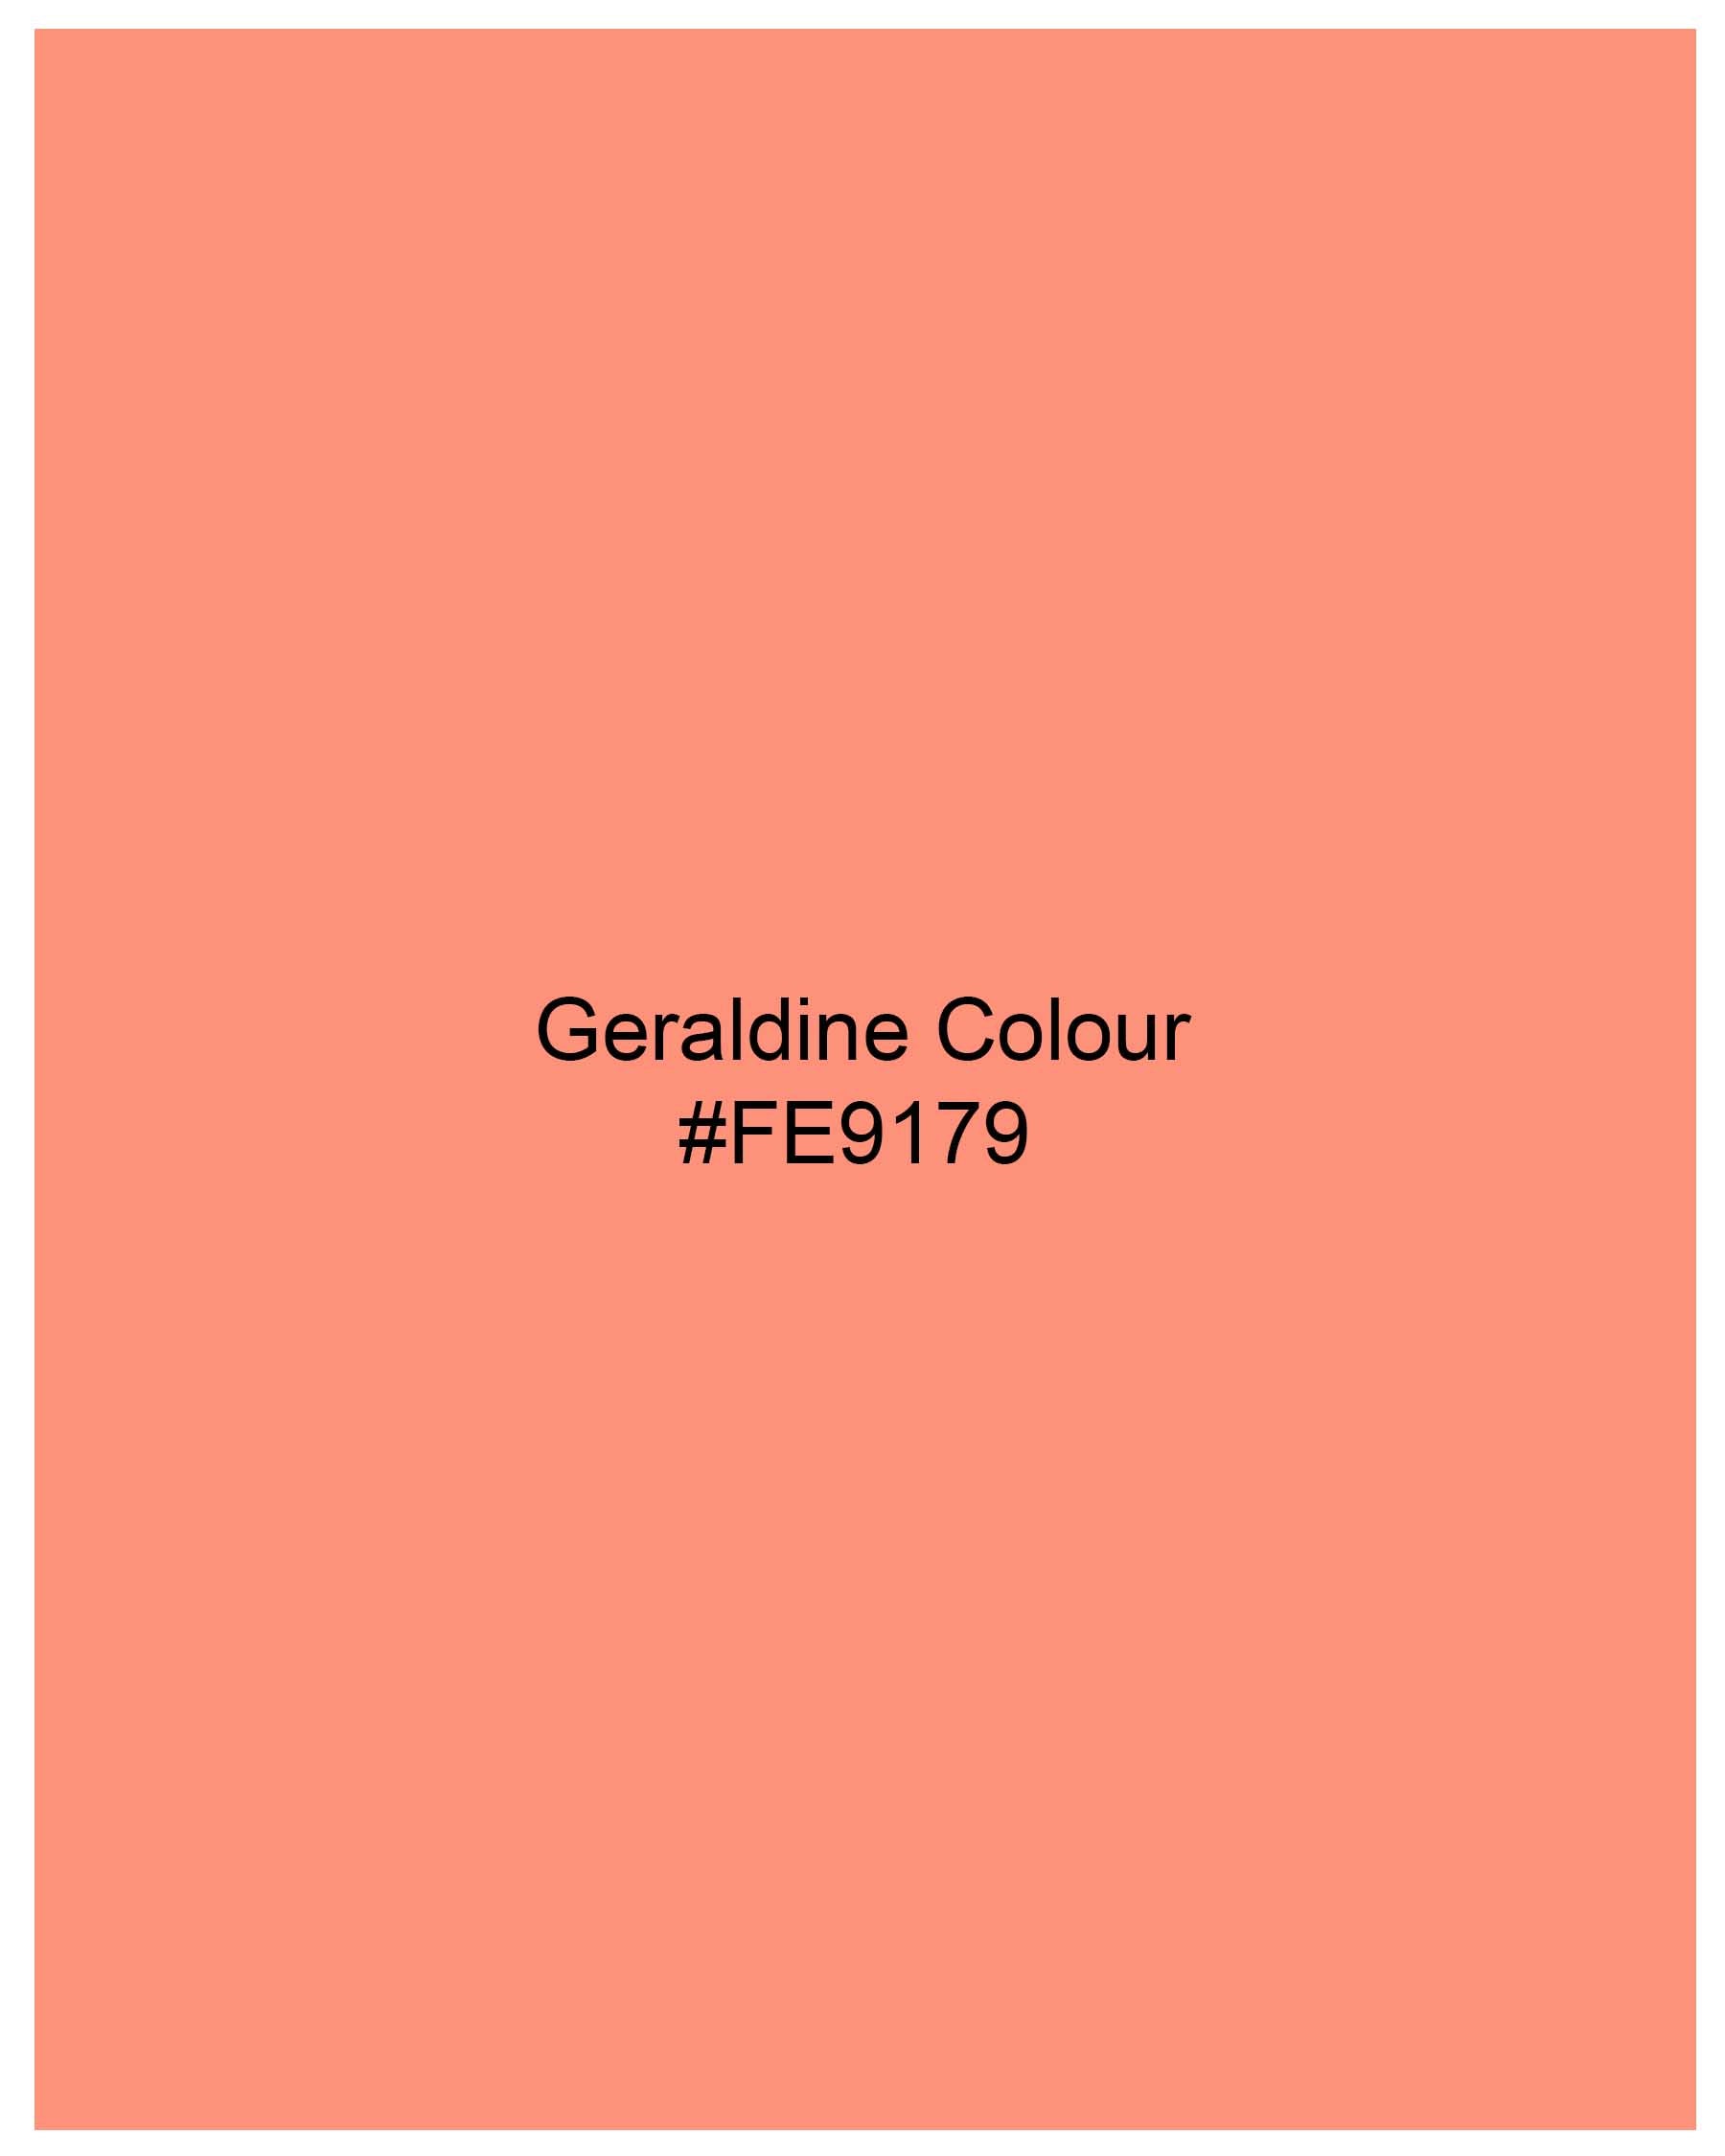 Geraldine Orange Dobby Textured Premium Giza Cotton Shirt 7978-38,7978-H-38,7978-39,7978-H-39,7978-40,7978-H-40,7978-42,7978-H-42,7978-44,7978-H-44,7978-46,7978-H-46,7978-48,7978-H-48,7978-50,7978-H-50,7978-52,7978-H-52